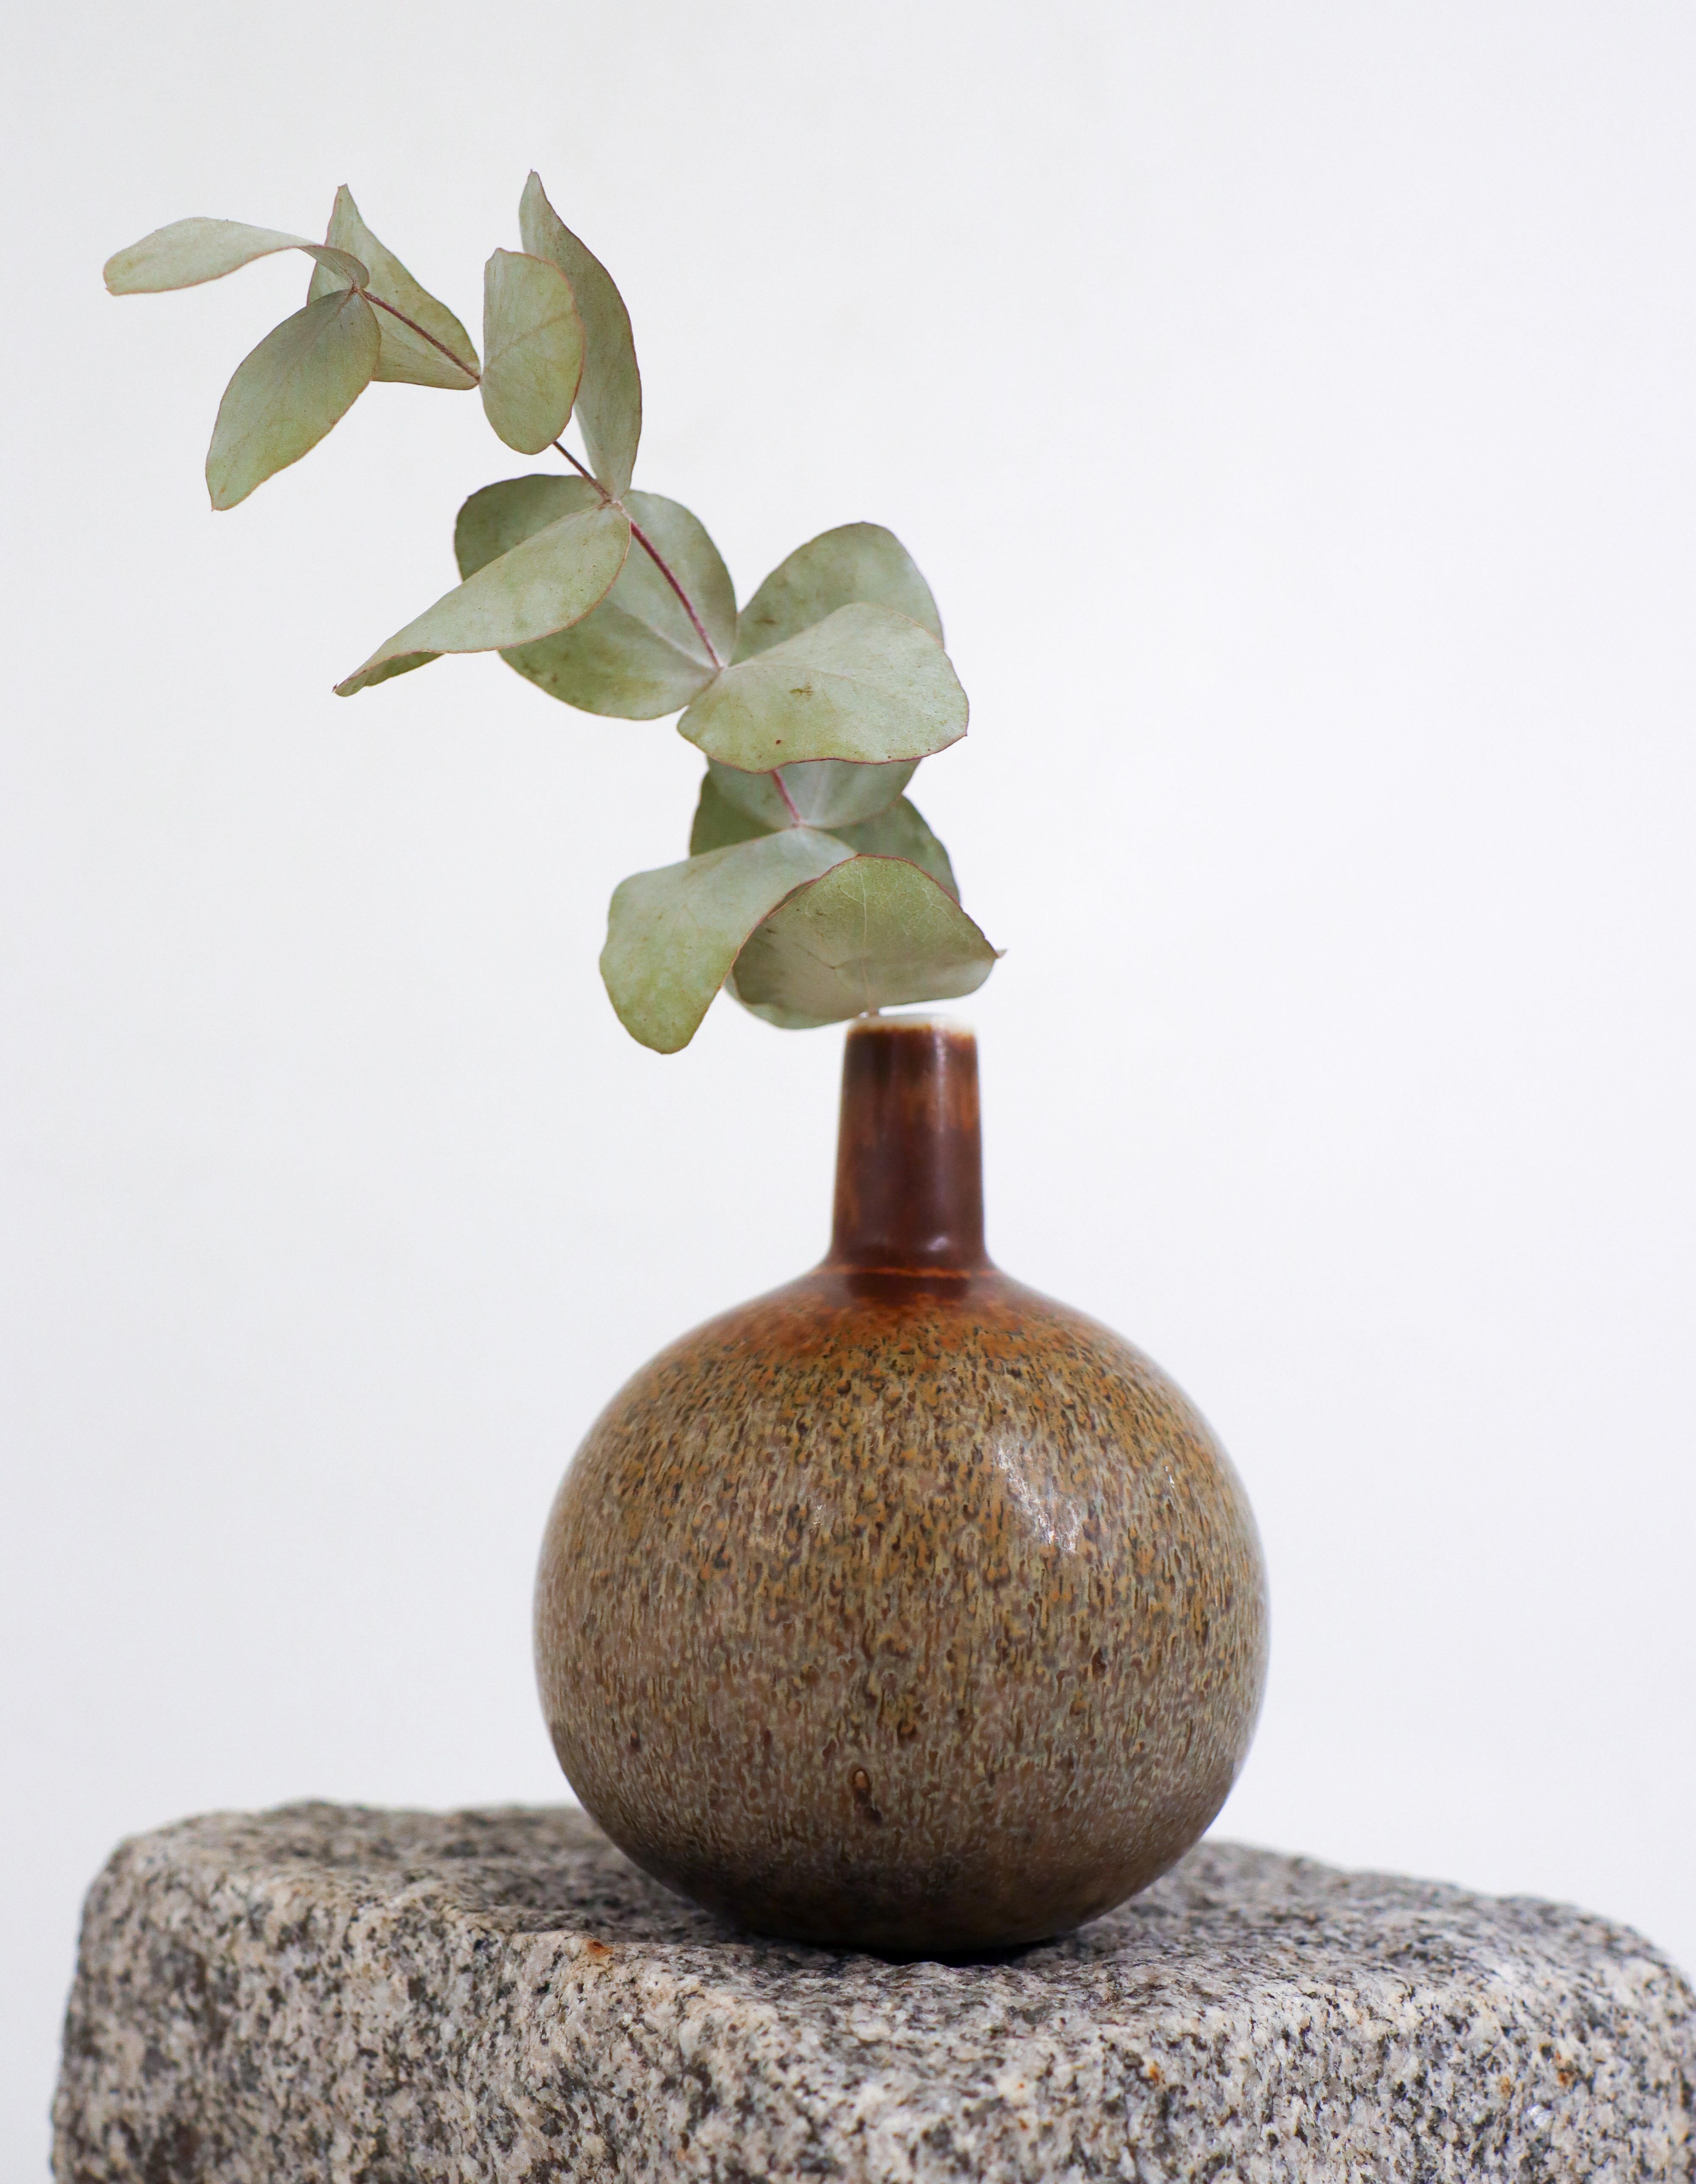 Un joli vase en céramique marron et gris conçu par Carl-Harry Stålhane chez Rörstrand au milieu du 20e siècle. Le vase mesure 11,5 cm de haut et est en excellent état. Le vase est marqué comme étant de première qualité. 

Carl-Harry Stålhane est